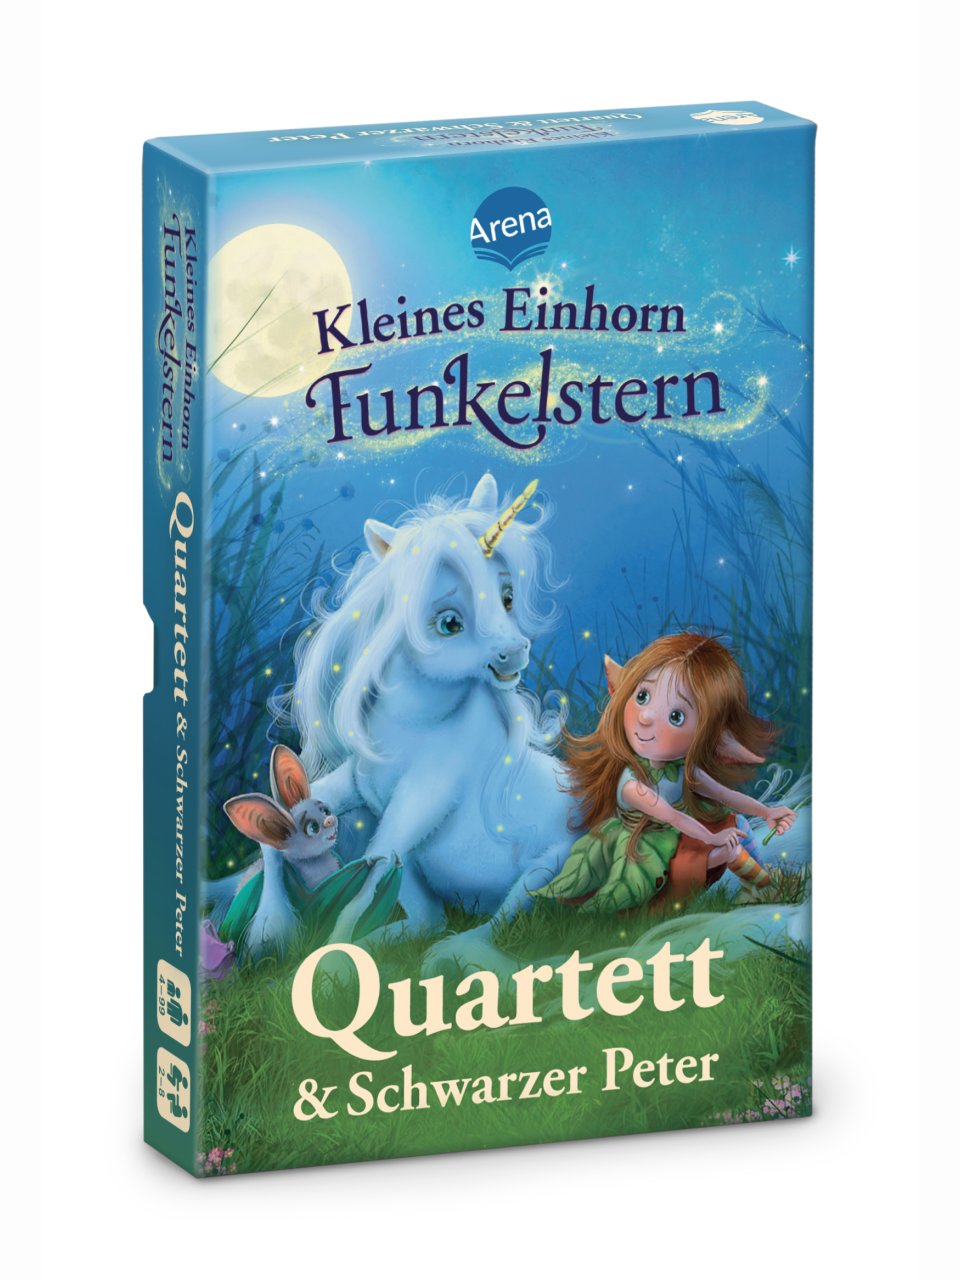 Kleines Einhorn Funkelstern – Quartett & Schwarzer Peter